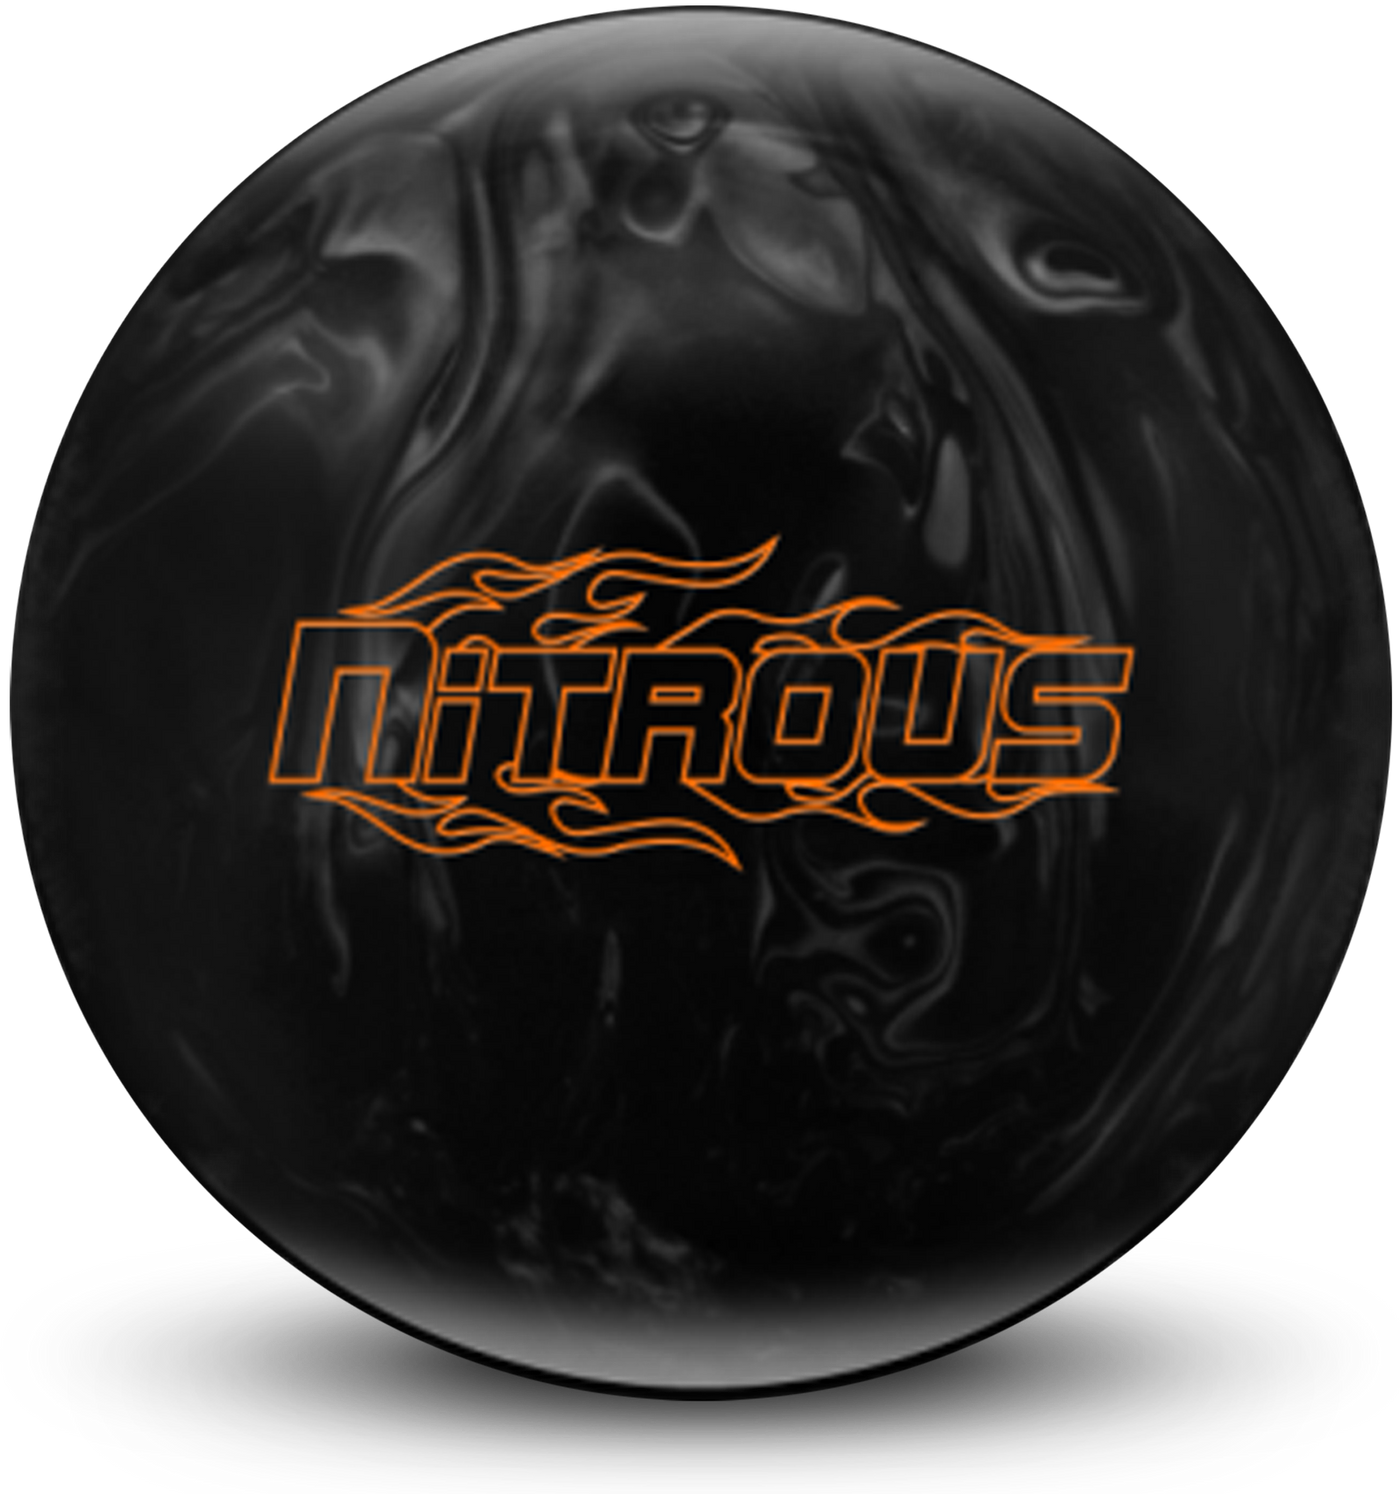 Nitrous Silver Black Bowling Ball